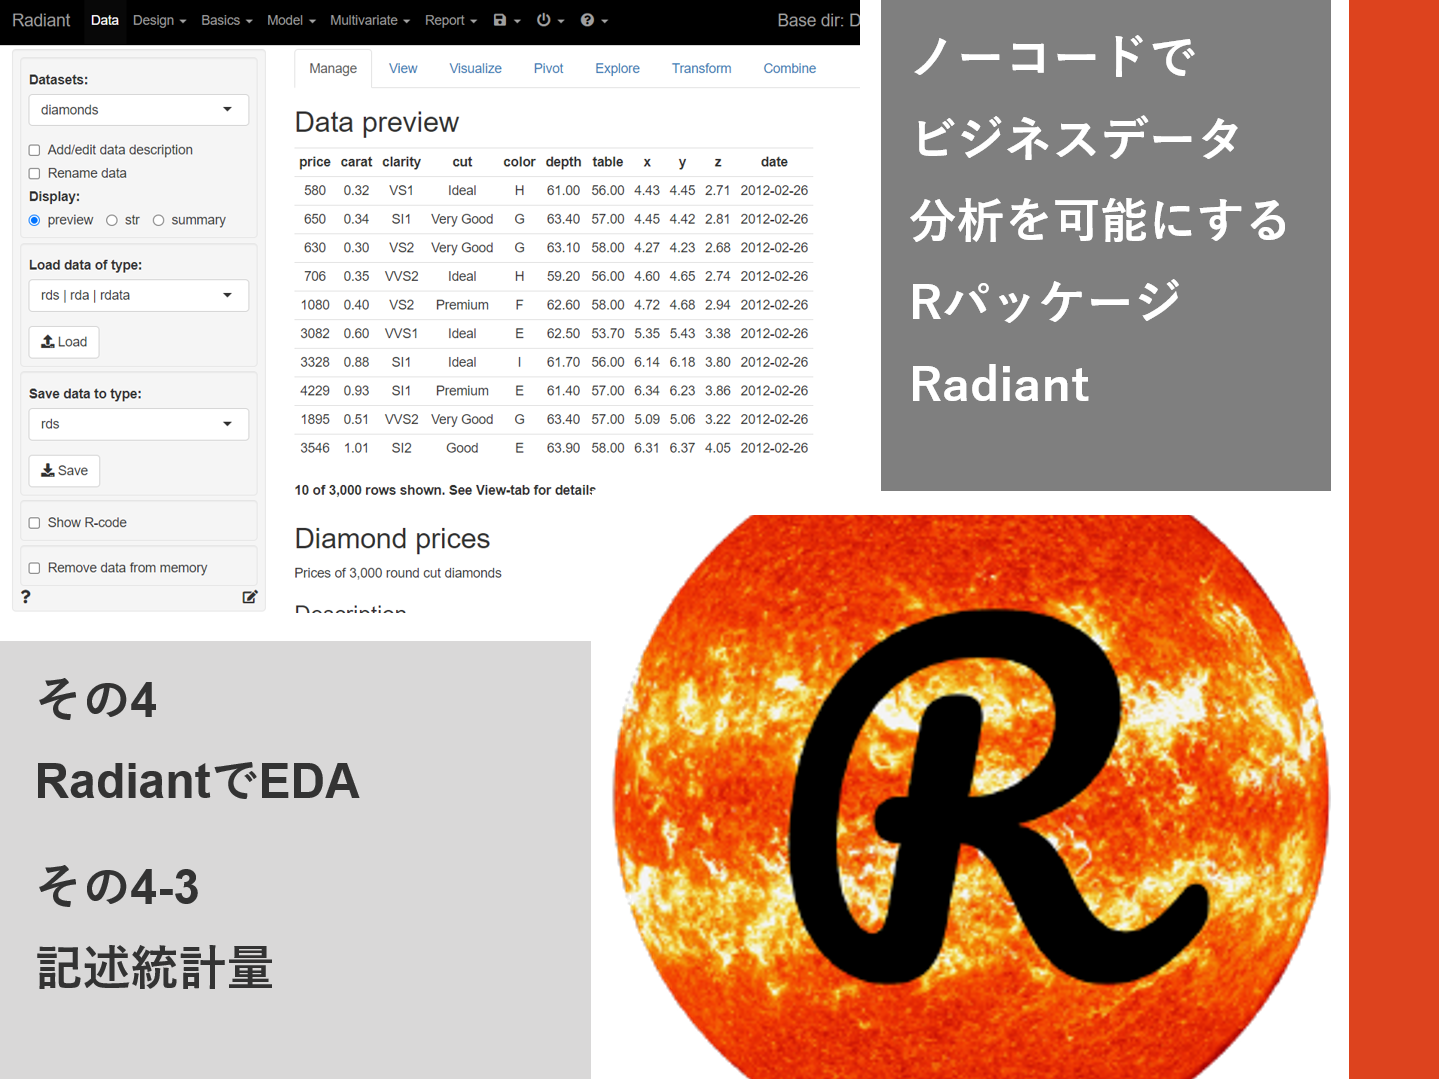 ノーコードでビジネスデータ分析を可能にするRパッケージRadiant<br>その4-3（RadiantでEDA – 記述統計量）